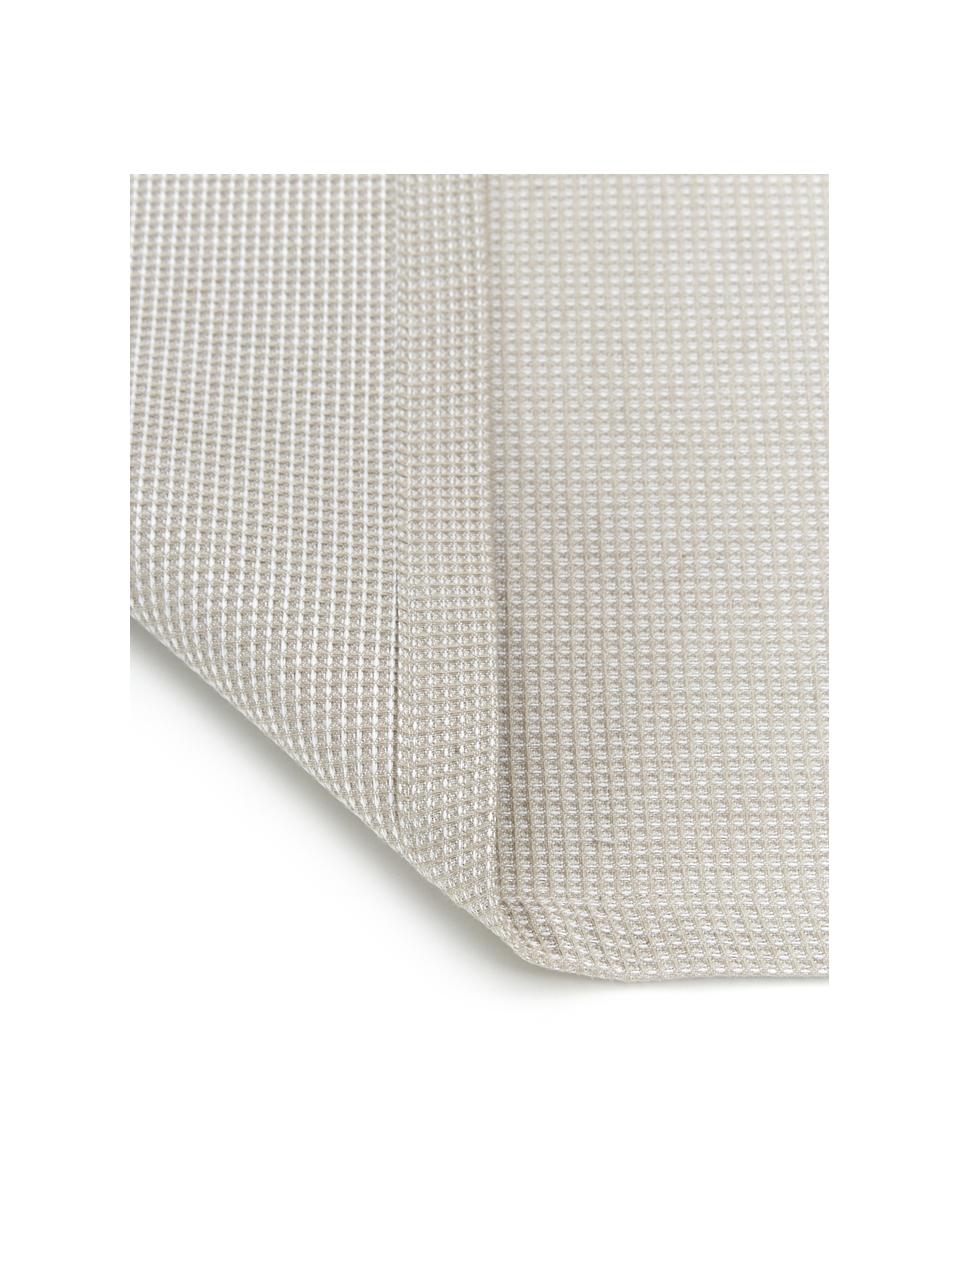 Waffelpiqué-Tischläufer Kubo in Taupe, 65% Baumwolle, 35% Polyester, Taupe, 40 x 145 cm